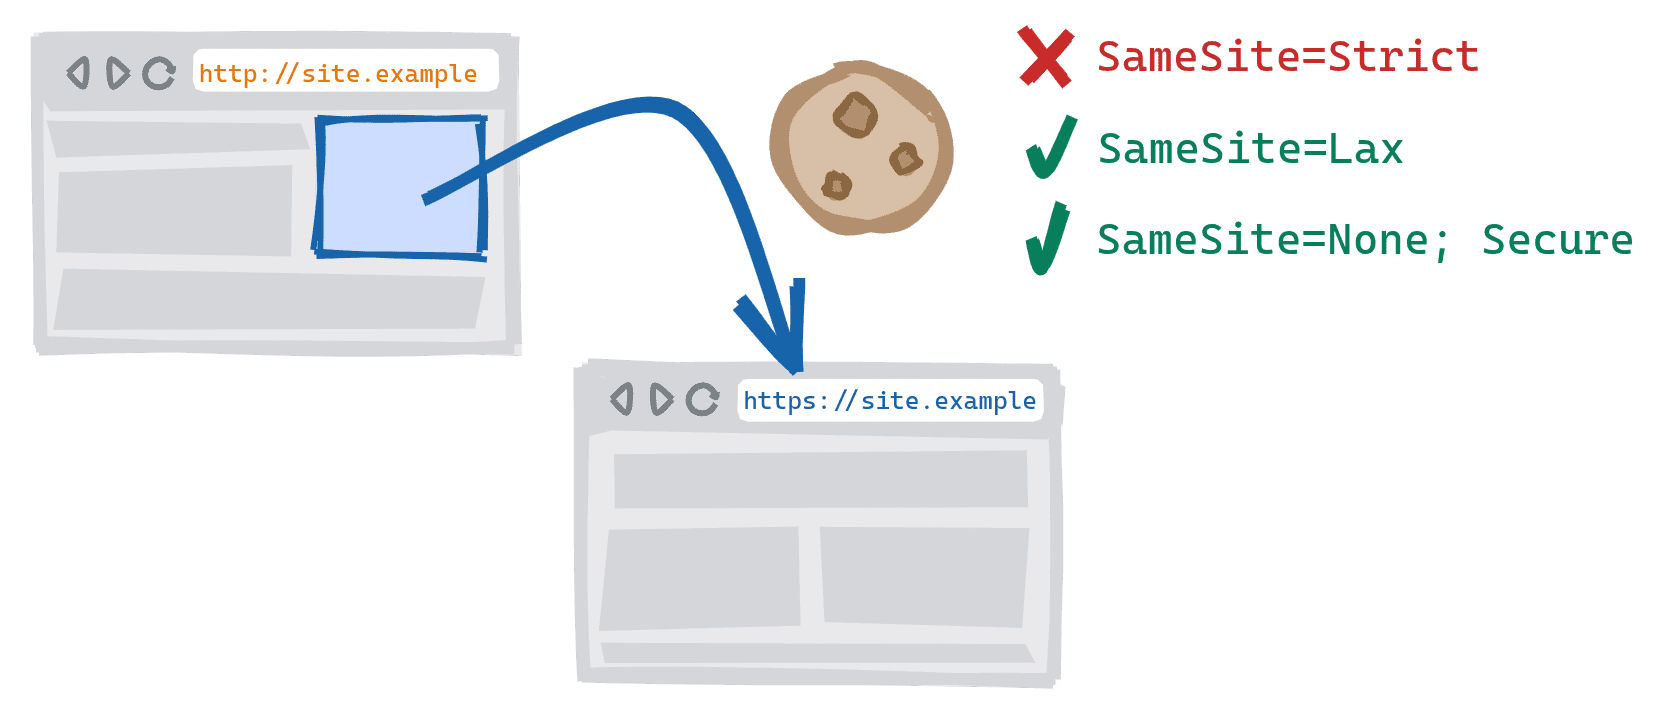 Một hoạt động điều hướng trên nhiều lược đồ được kích hoạt bằng cách đi theo một đường liên kết trên phiên bản HTTP không an toàn của một trang web đến phiên bản HTTPS bảo mật. SameSite=Cookie bị chặn, SameSite=Lax và SameSite=None; Cho phép các cookie an toàn.